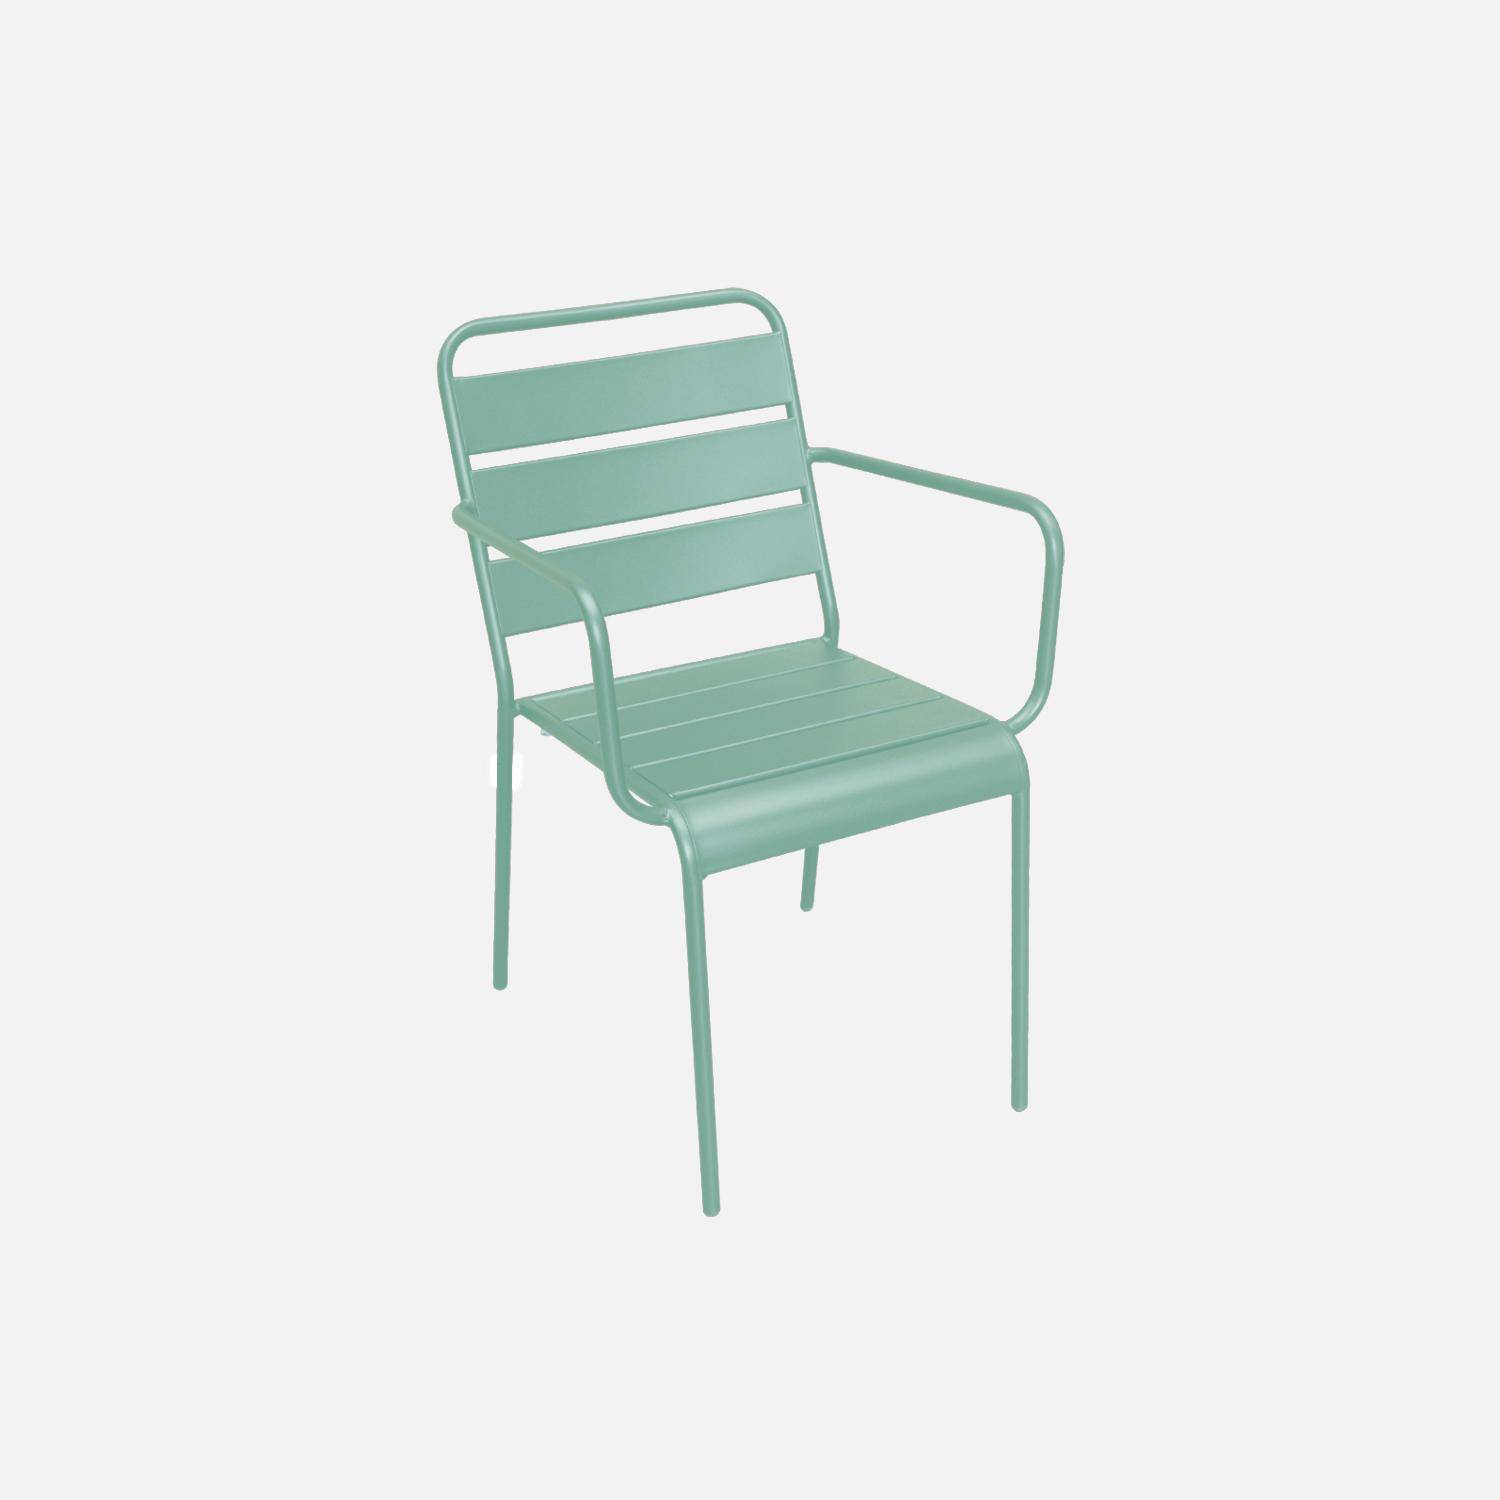 Lot de 2 fauteuils intérieur / extérieur en métal peinture antirouille empilables coloris vert jade,sweeek,Photo2